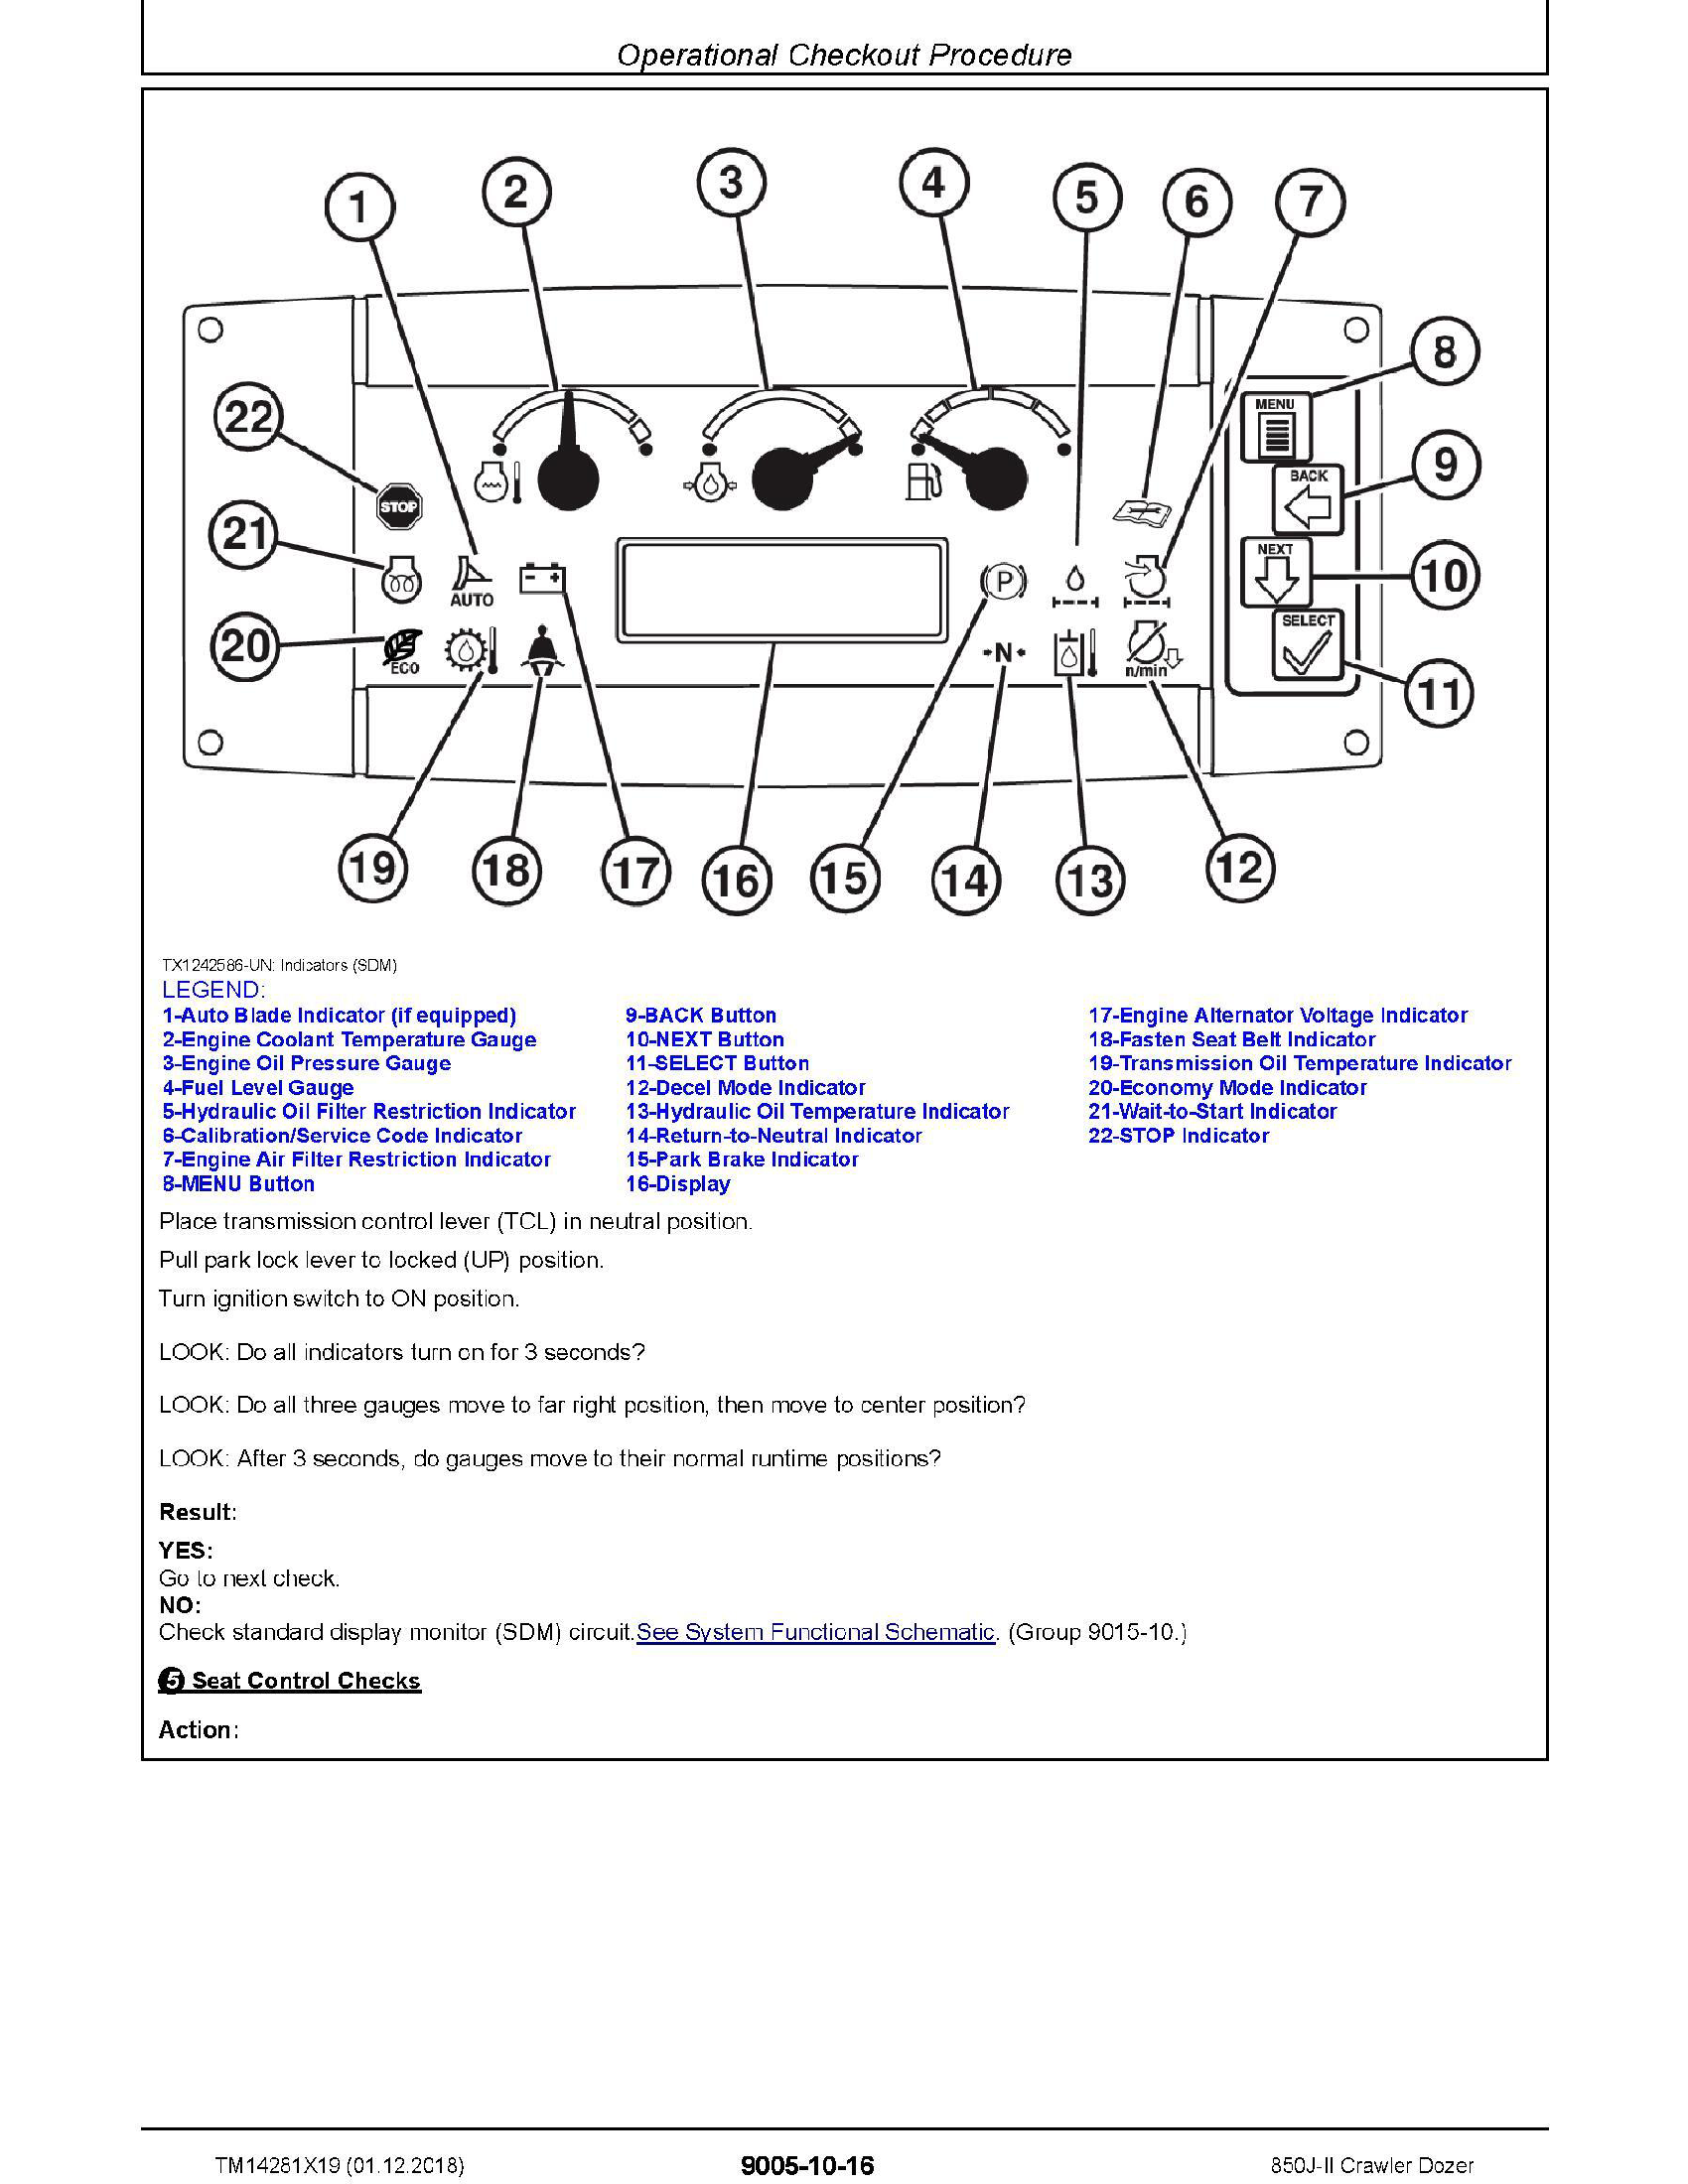 John Deere 850J manual pdf